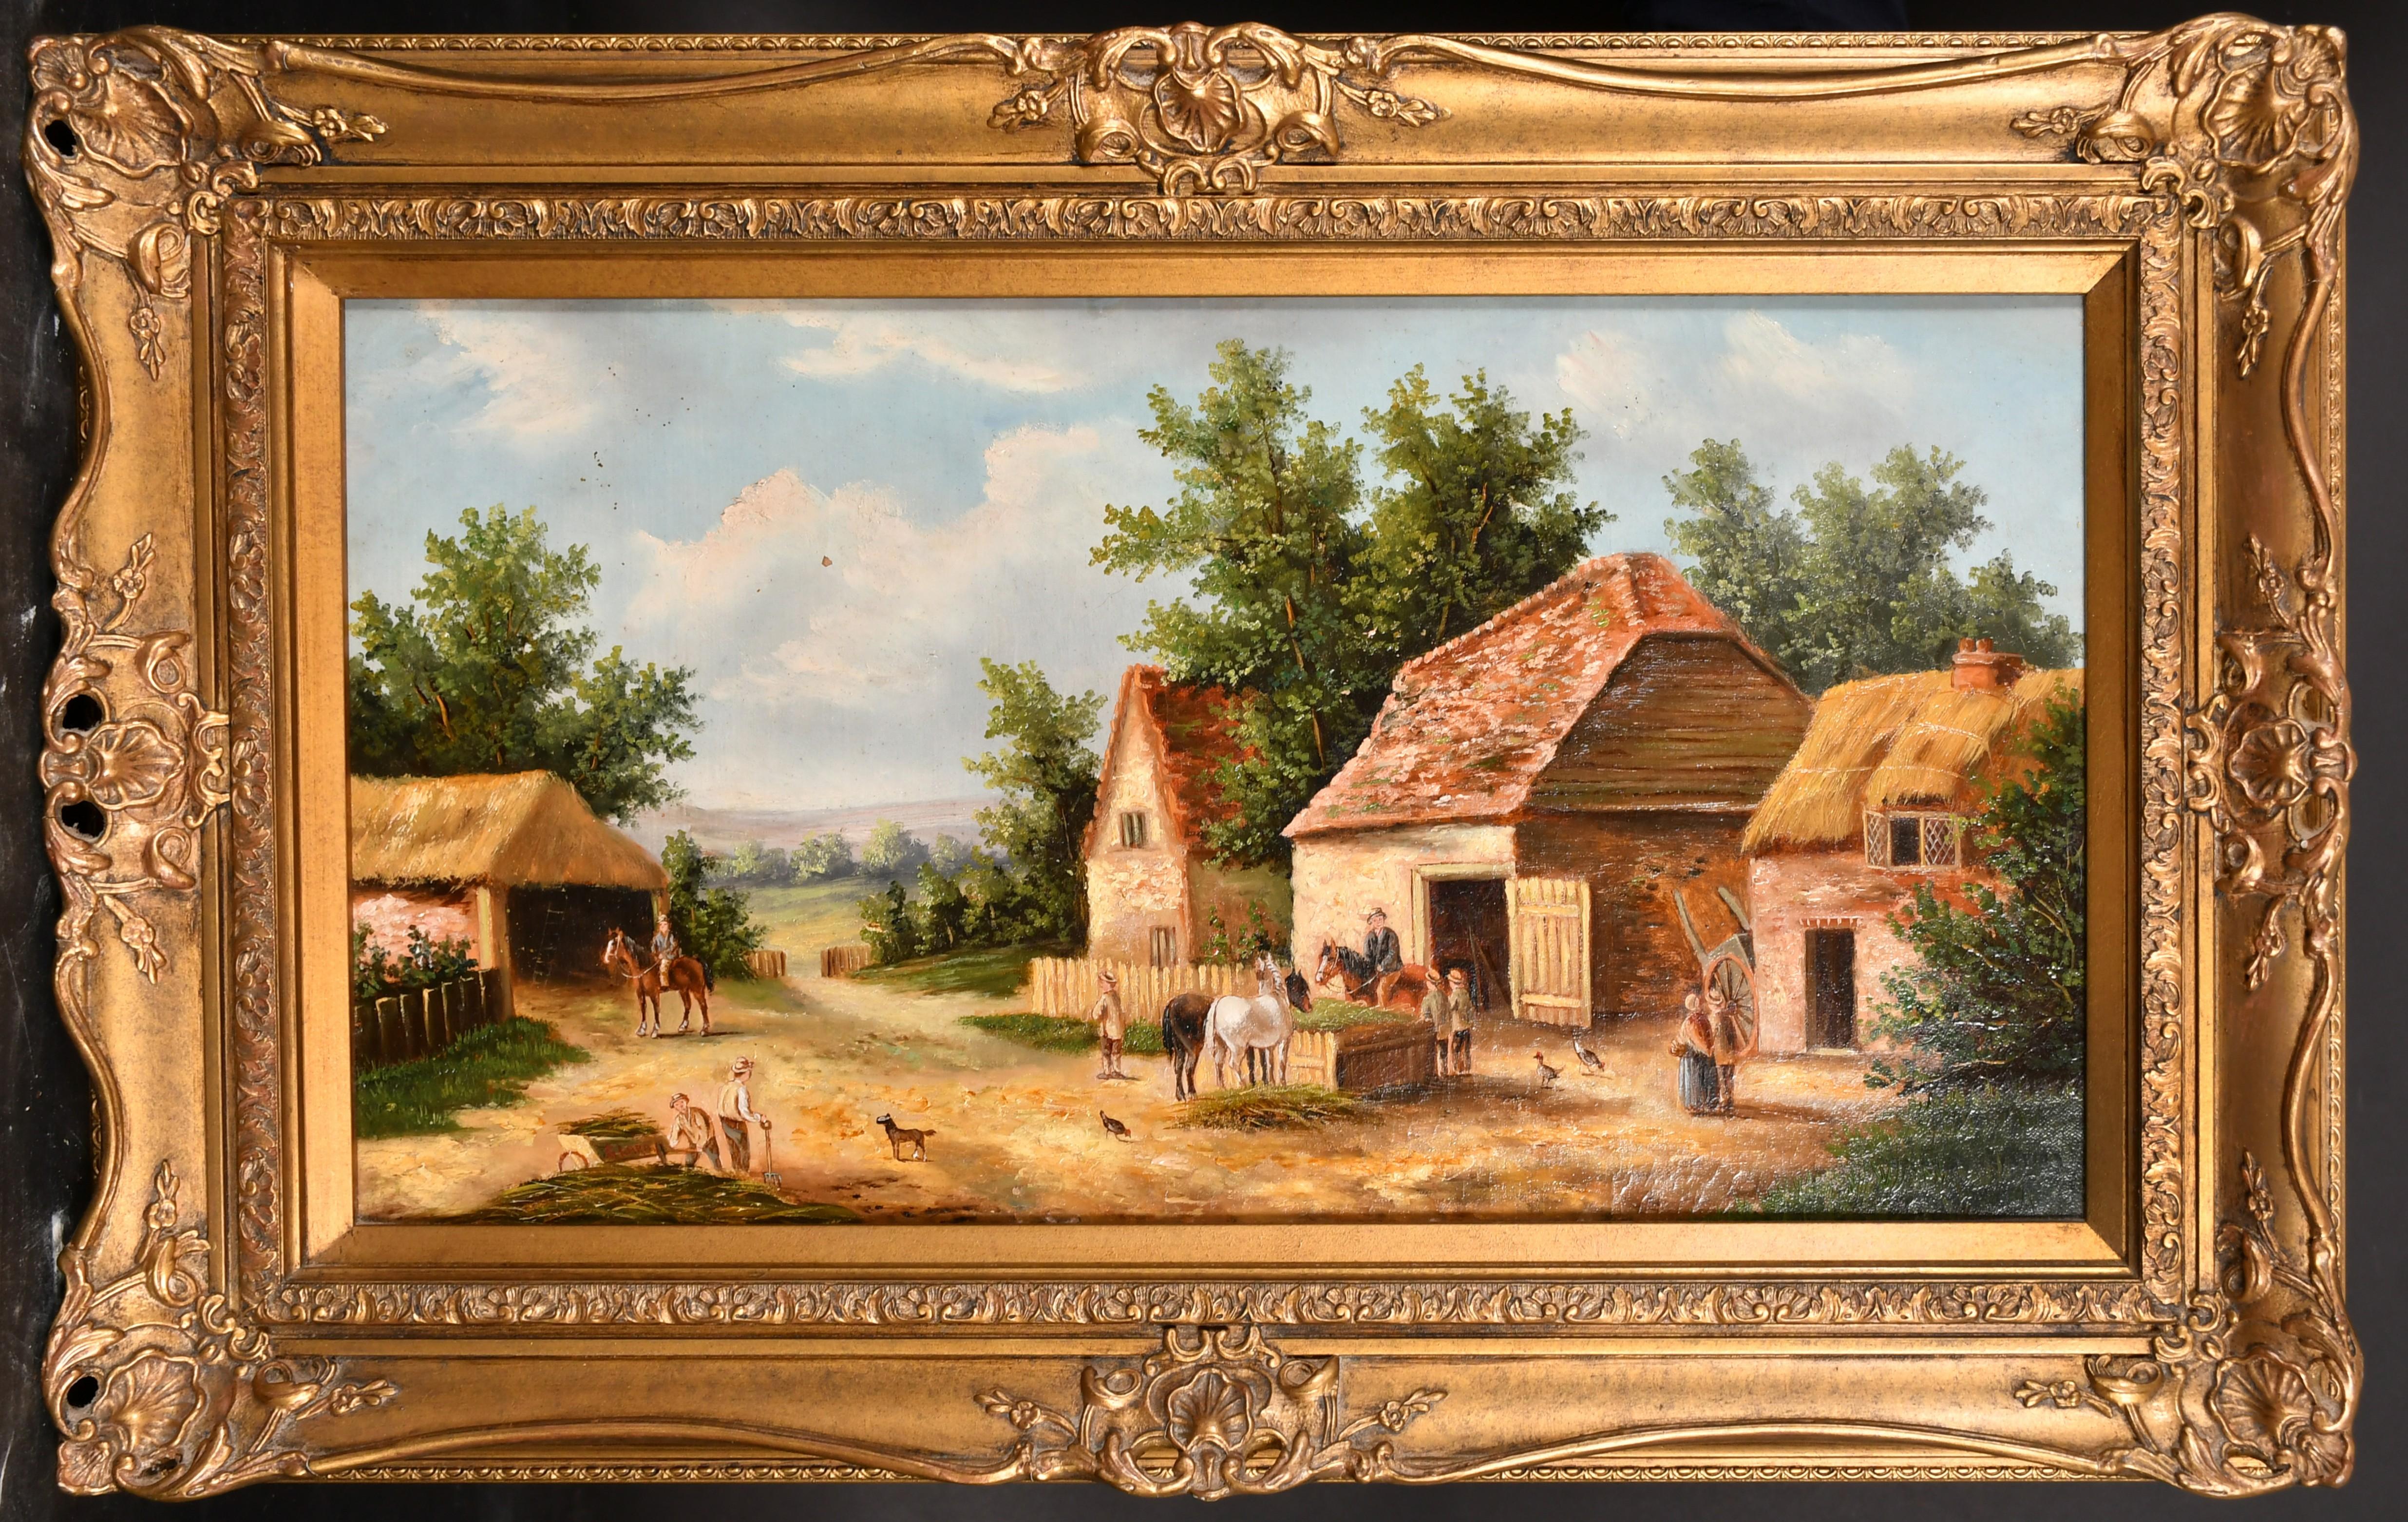 feines Ölgemälde einer Bauernhofszene von Georgina Lara (act.1840-1880) Britin.
Öl auf Leinwand, in einem vergoldeten Rahmen untergebracht. Signiert und beschriftet auf einem Label verso,
Die Gesamtgröße beträgt 69 x 45 cm, während das Bild 29 x 54